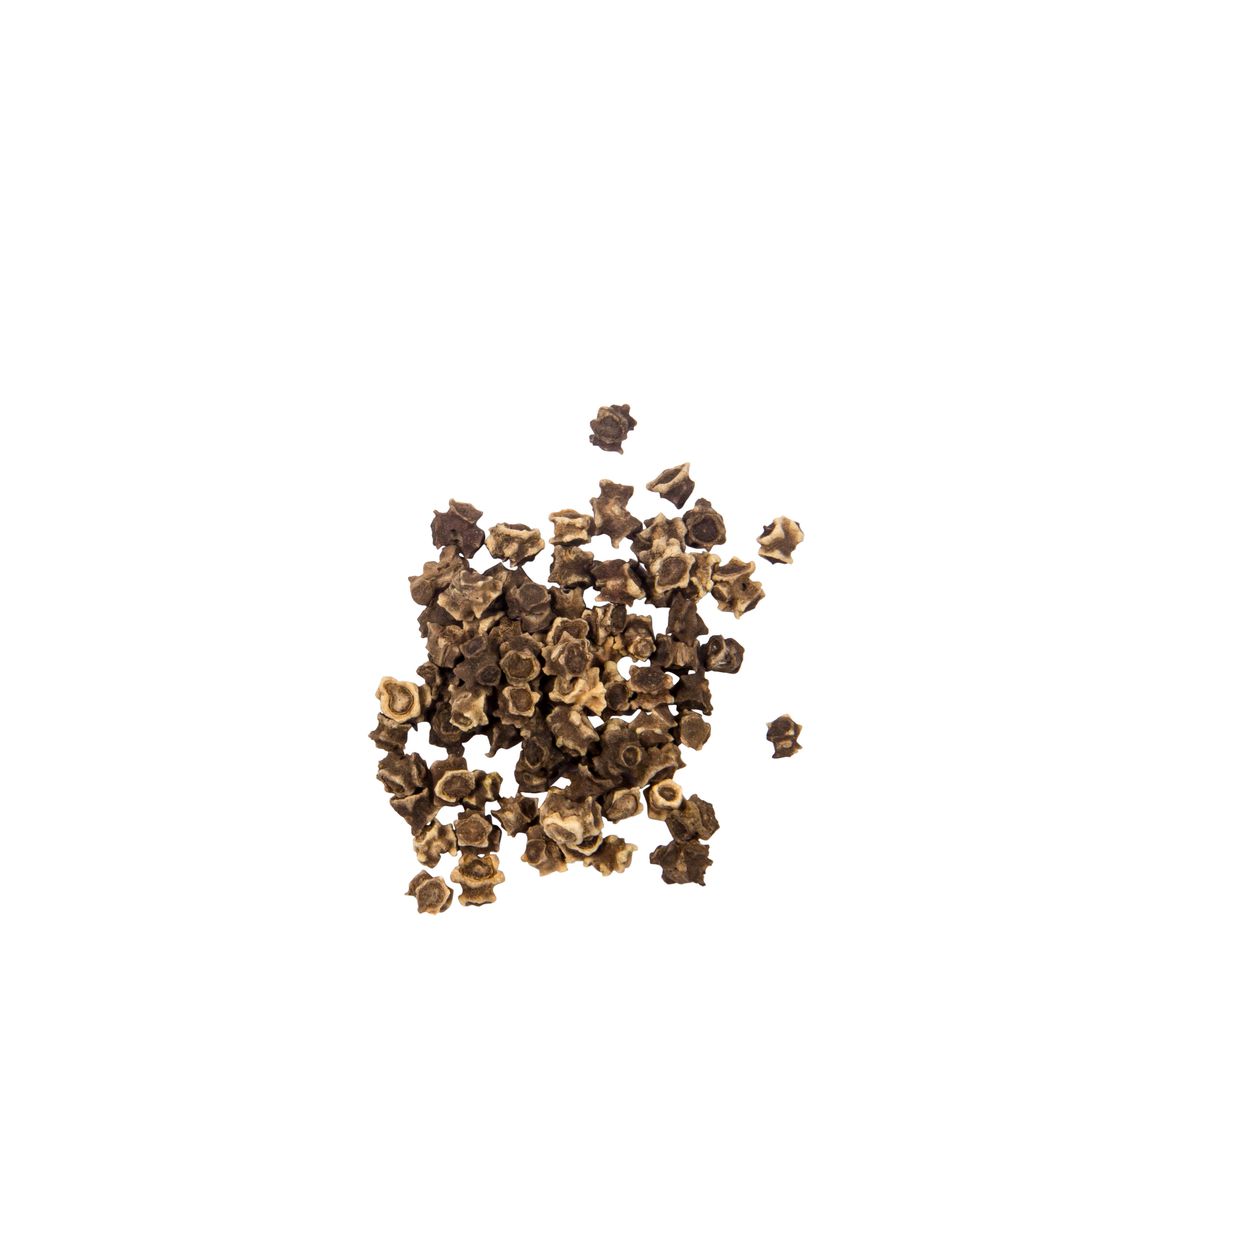 Brim Seed Co. - Fordhook Swiss Chard Heirloom Seed